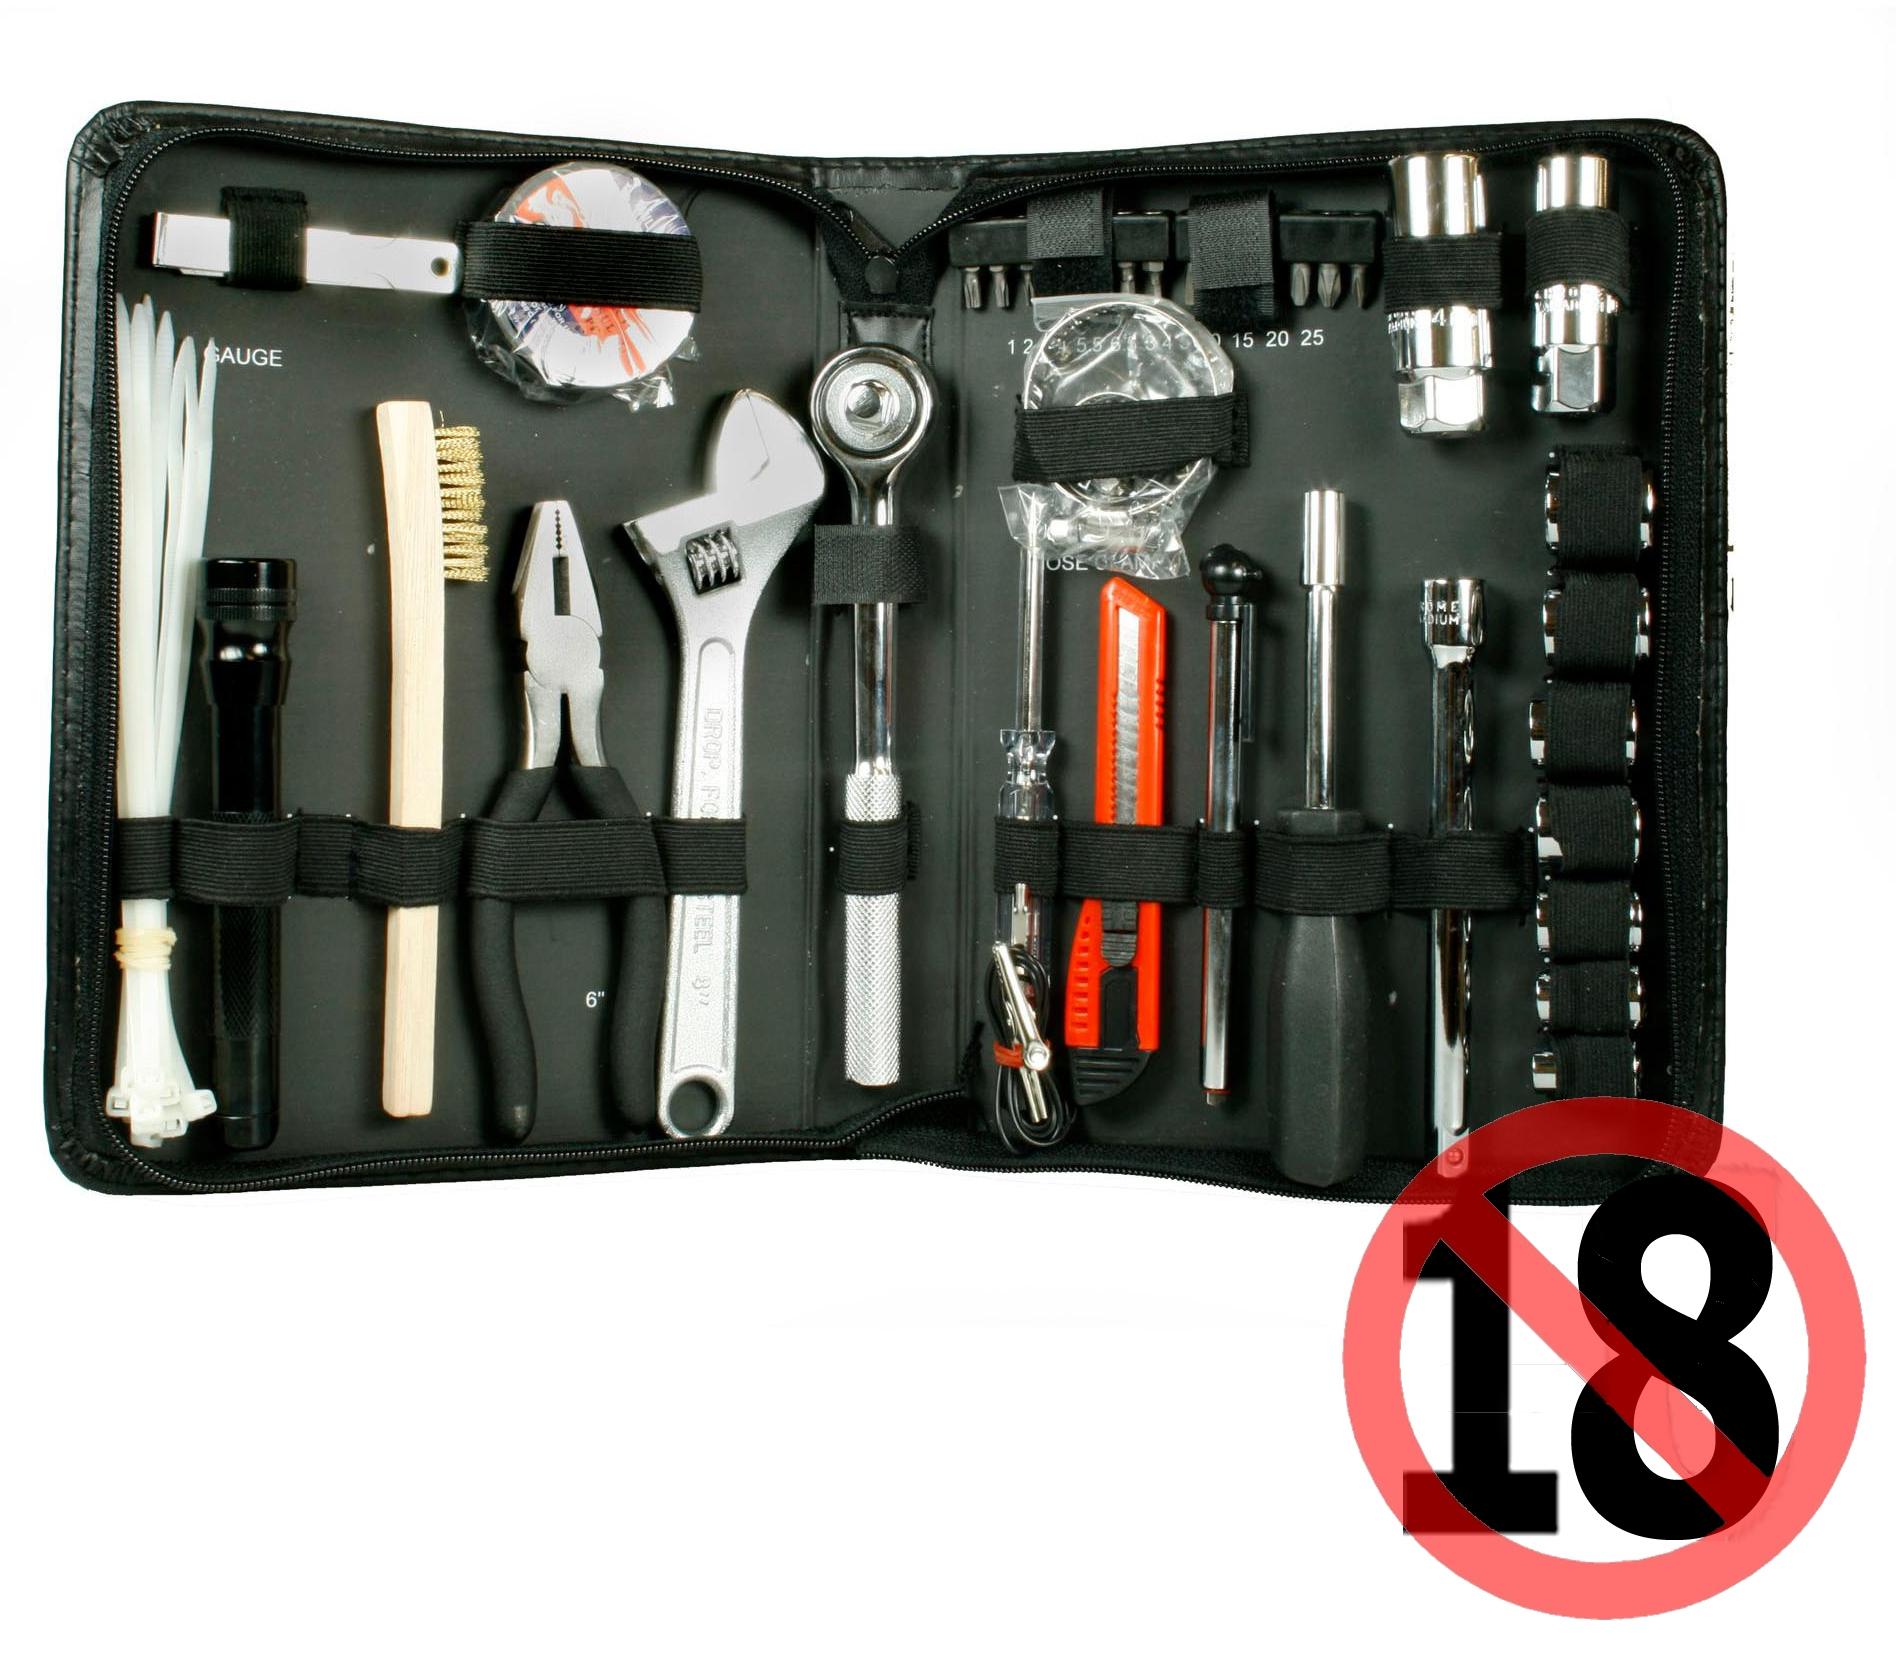 halfords essential bike tool kit